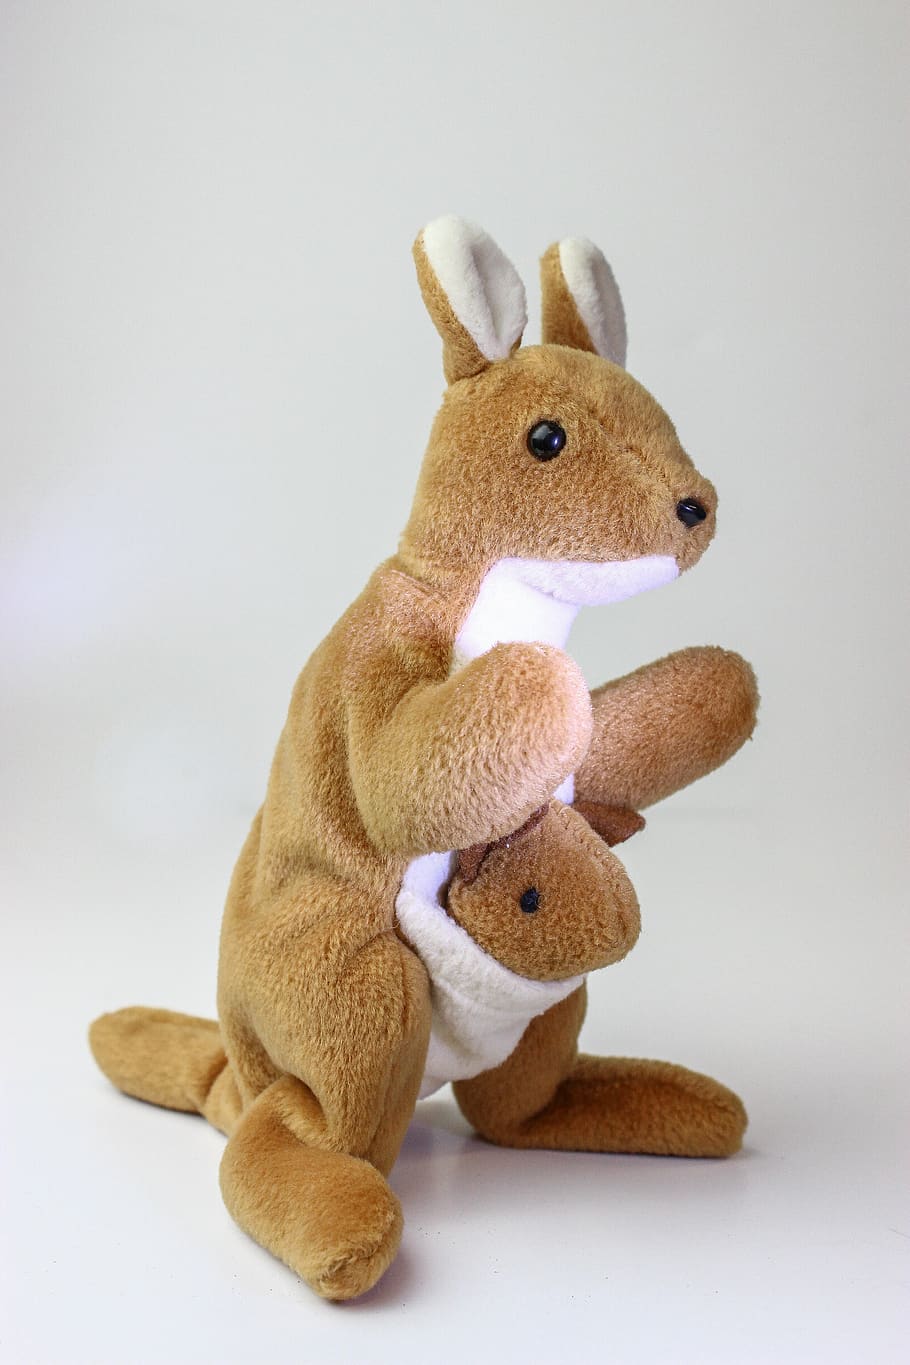 beanie baby, plush, toy, plush toy, kangaroo, brown, soft toy